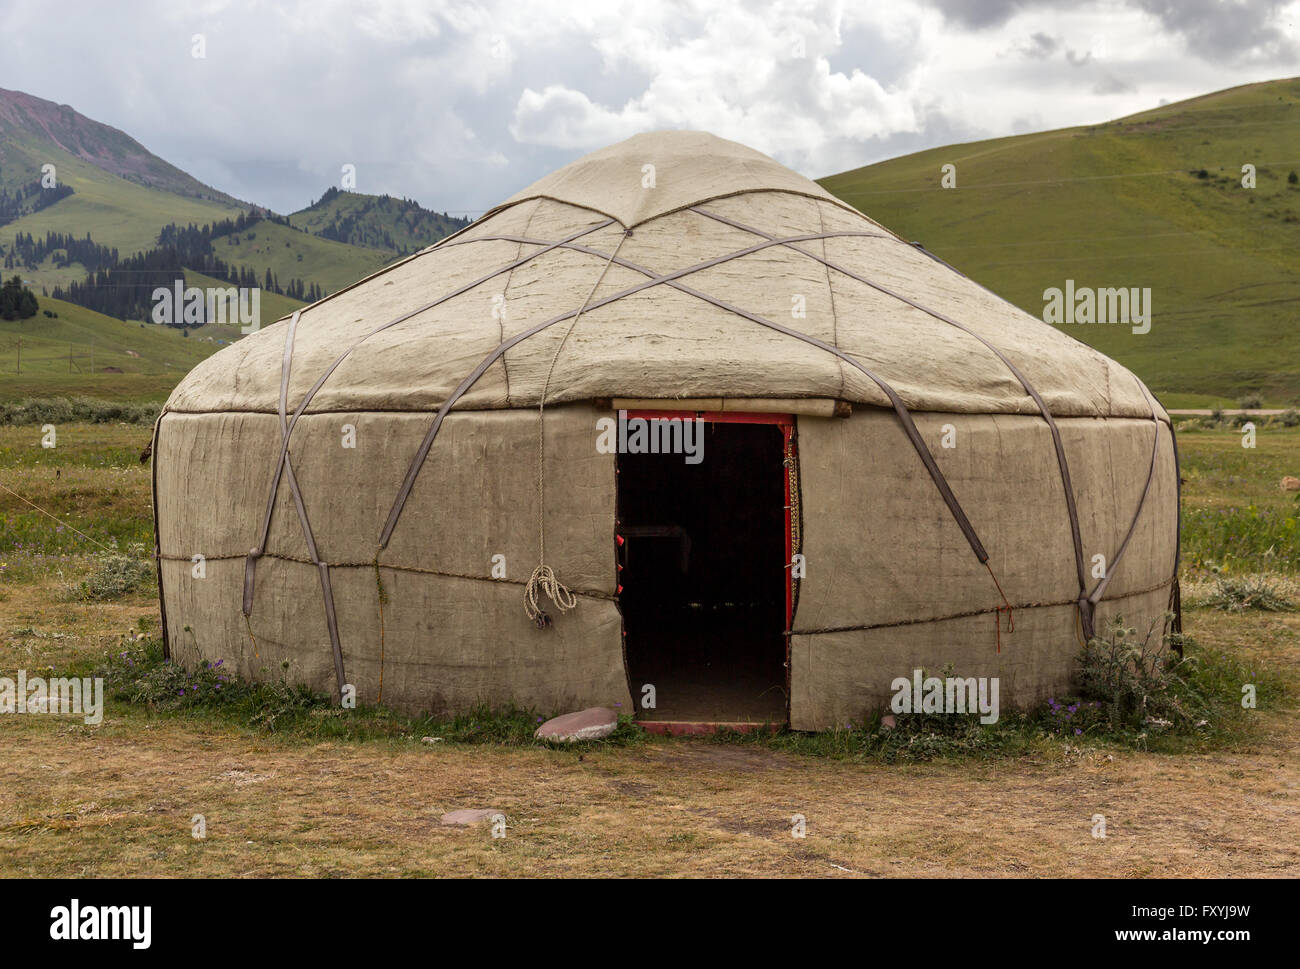 Yurt in Central Asian Veld Stock Photo